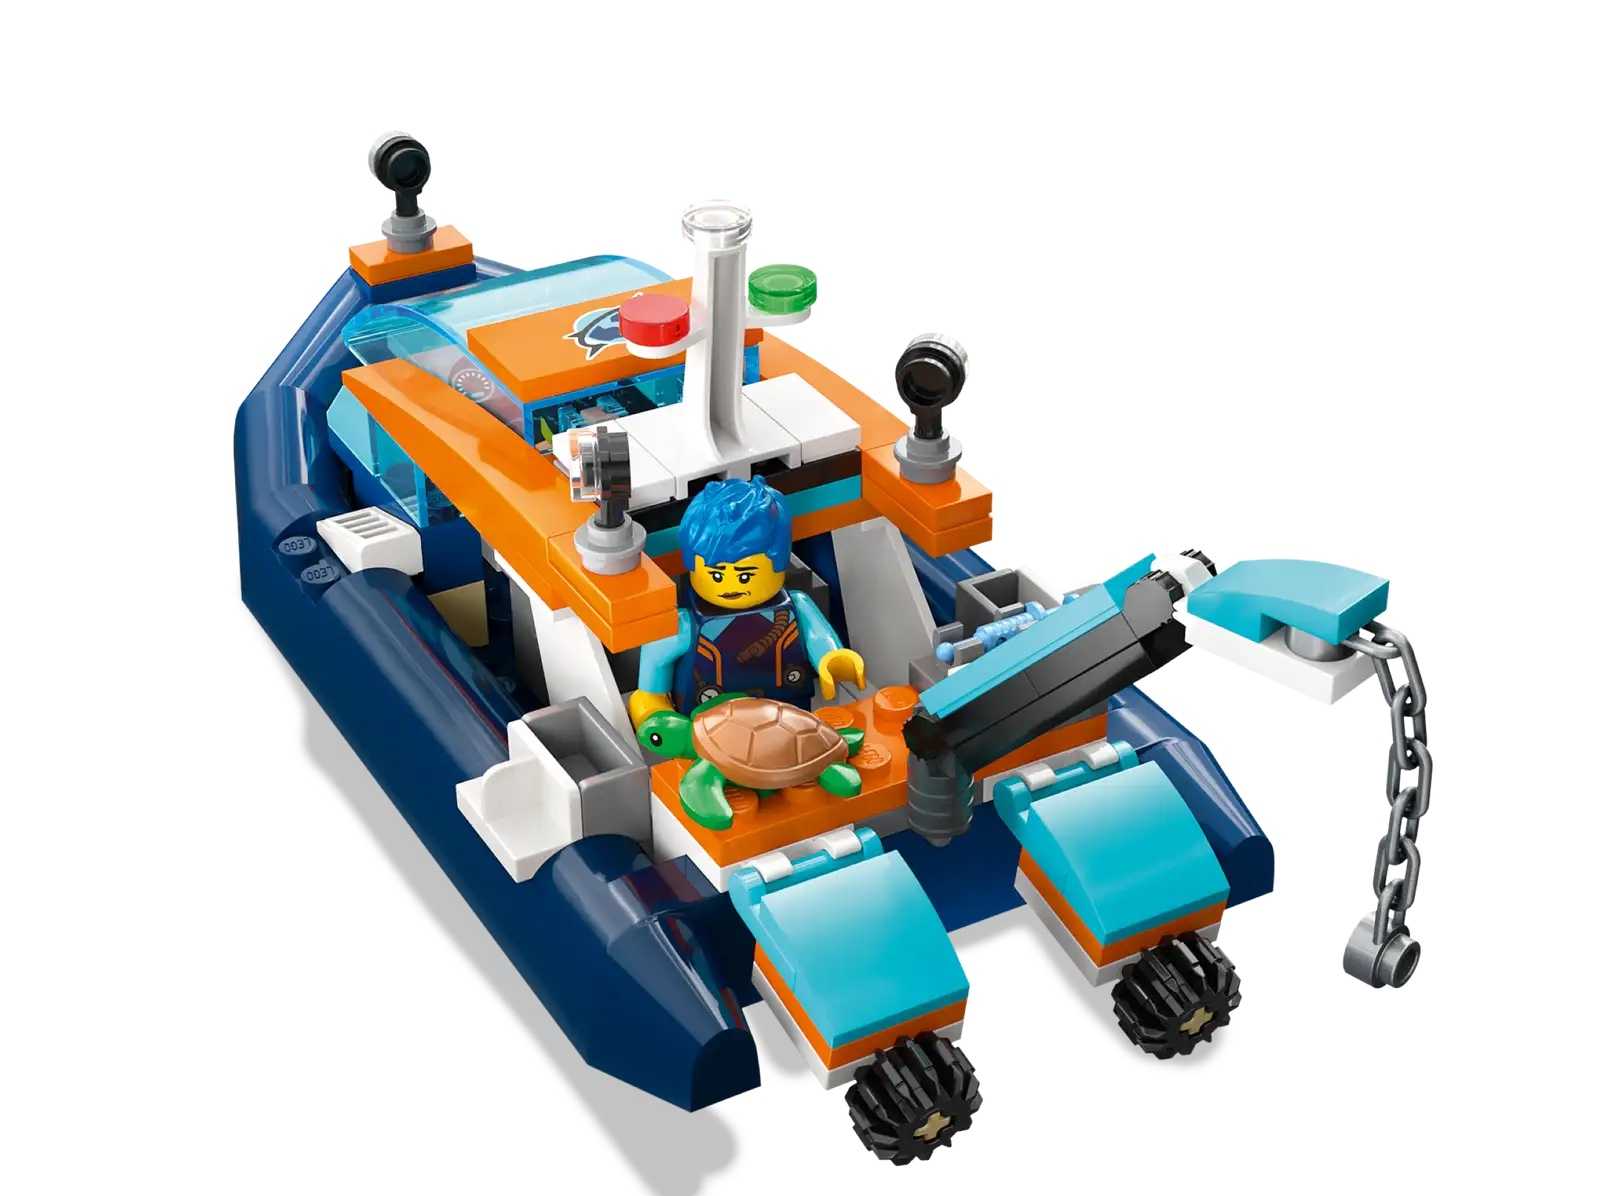 [高雄 飛米樂高積木專賣店] LEGO 60377 City-探險家潛水工作船